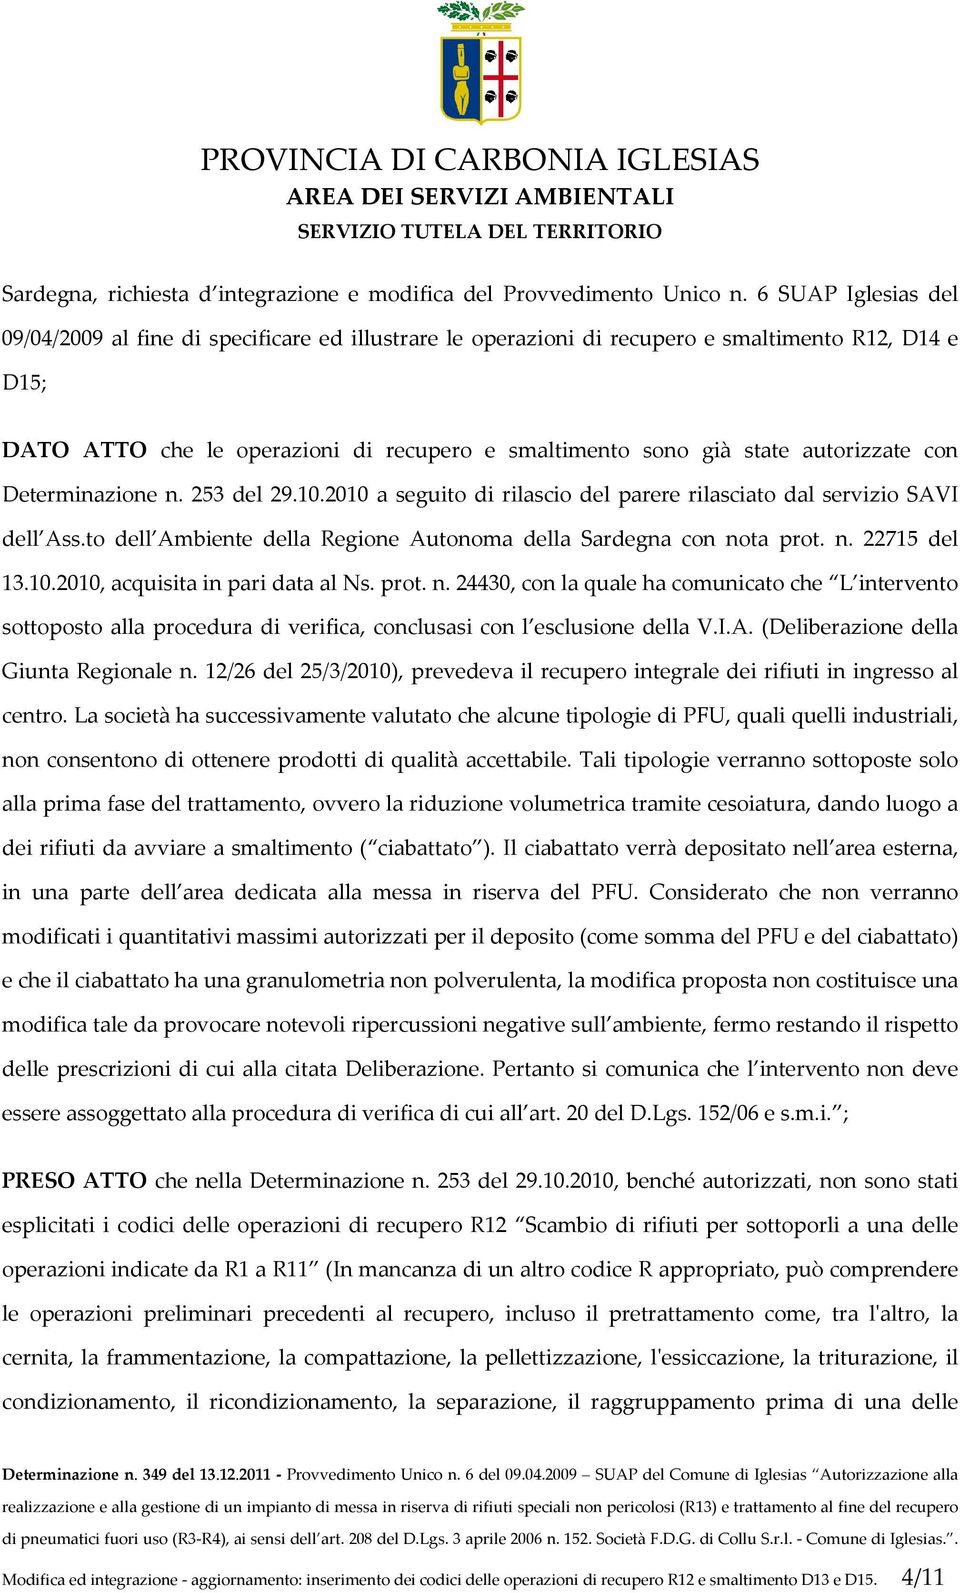 autorizzate con Determinazione n. 253 del 29.10.2010 a seguito di rilascio del parere rilasciato dal servizio SAVI dell Ass.to dell Ambiente della Regione Autonoma della Sardegna con nota prot. n. 22715 del 13.